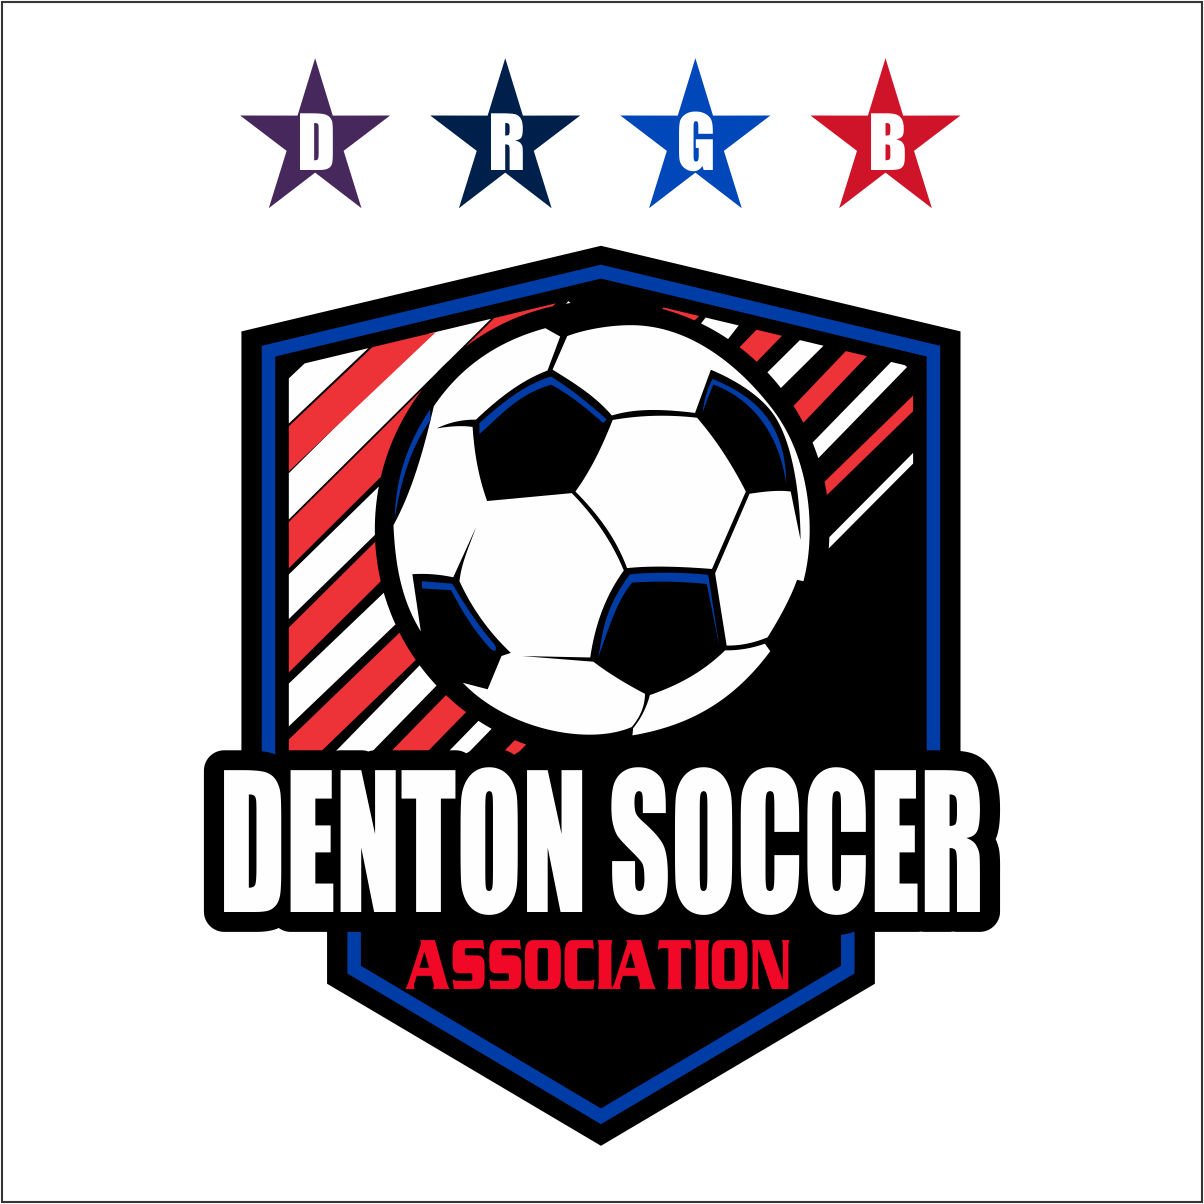 Denton Soccer Association team badge